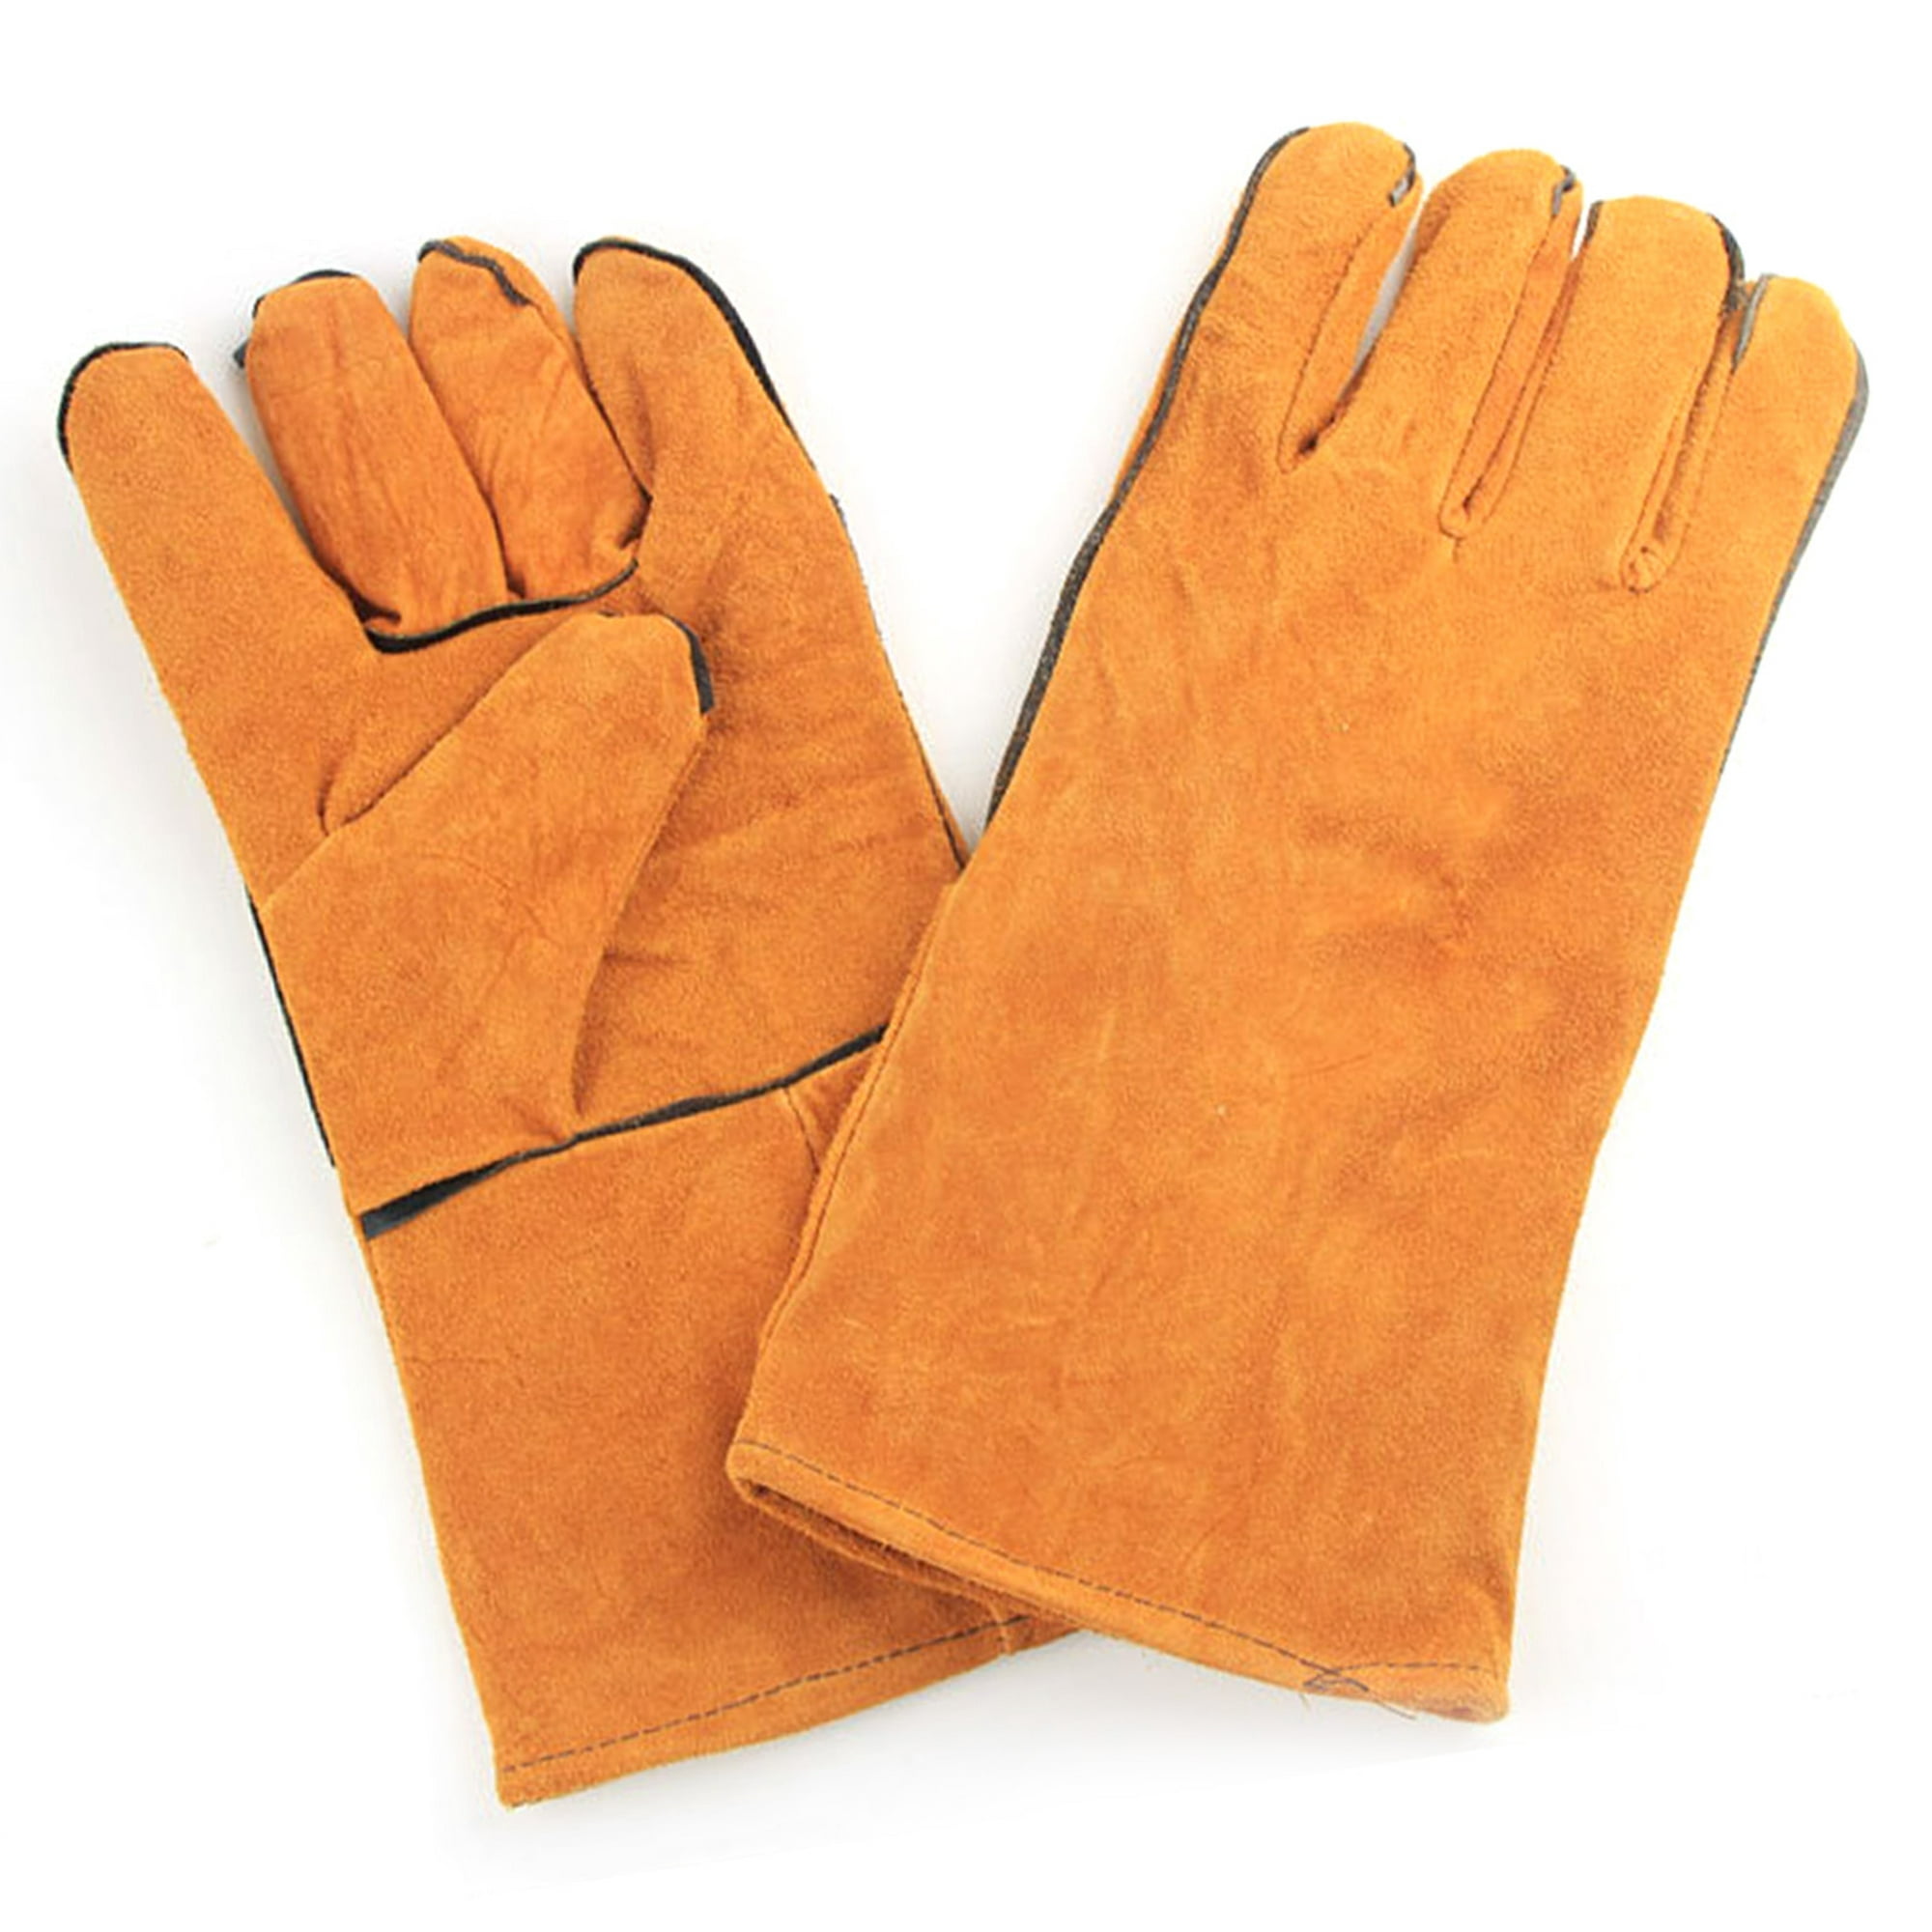 Guantes de soldadura,guantes de soldadura de forja guantes de soldador de piel de ganado guantes de soldador eléctrico grado profesional